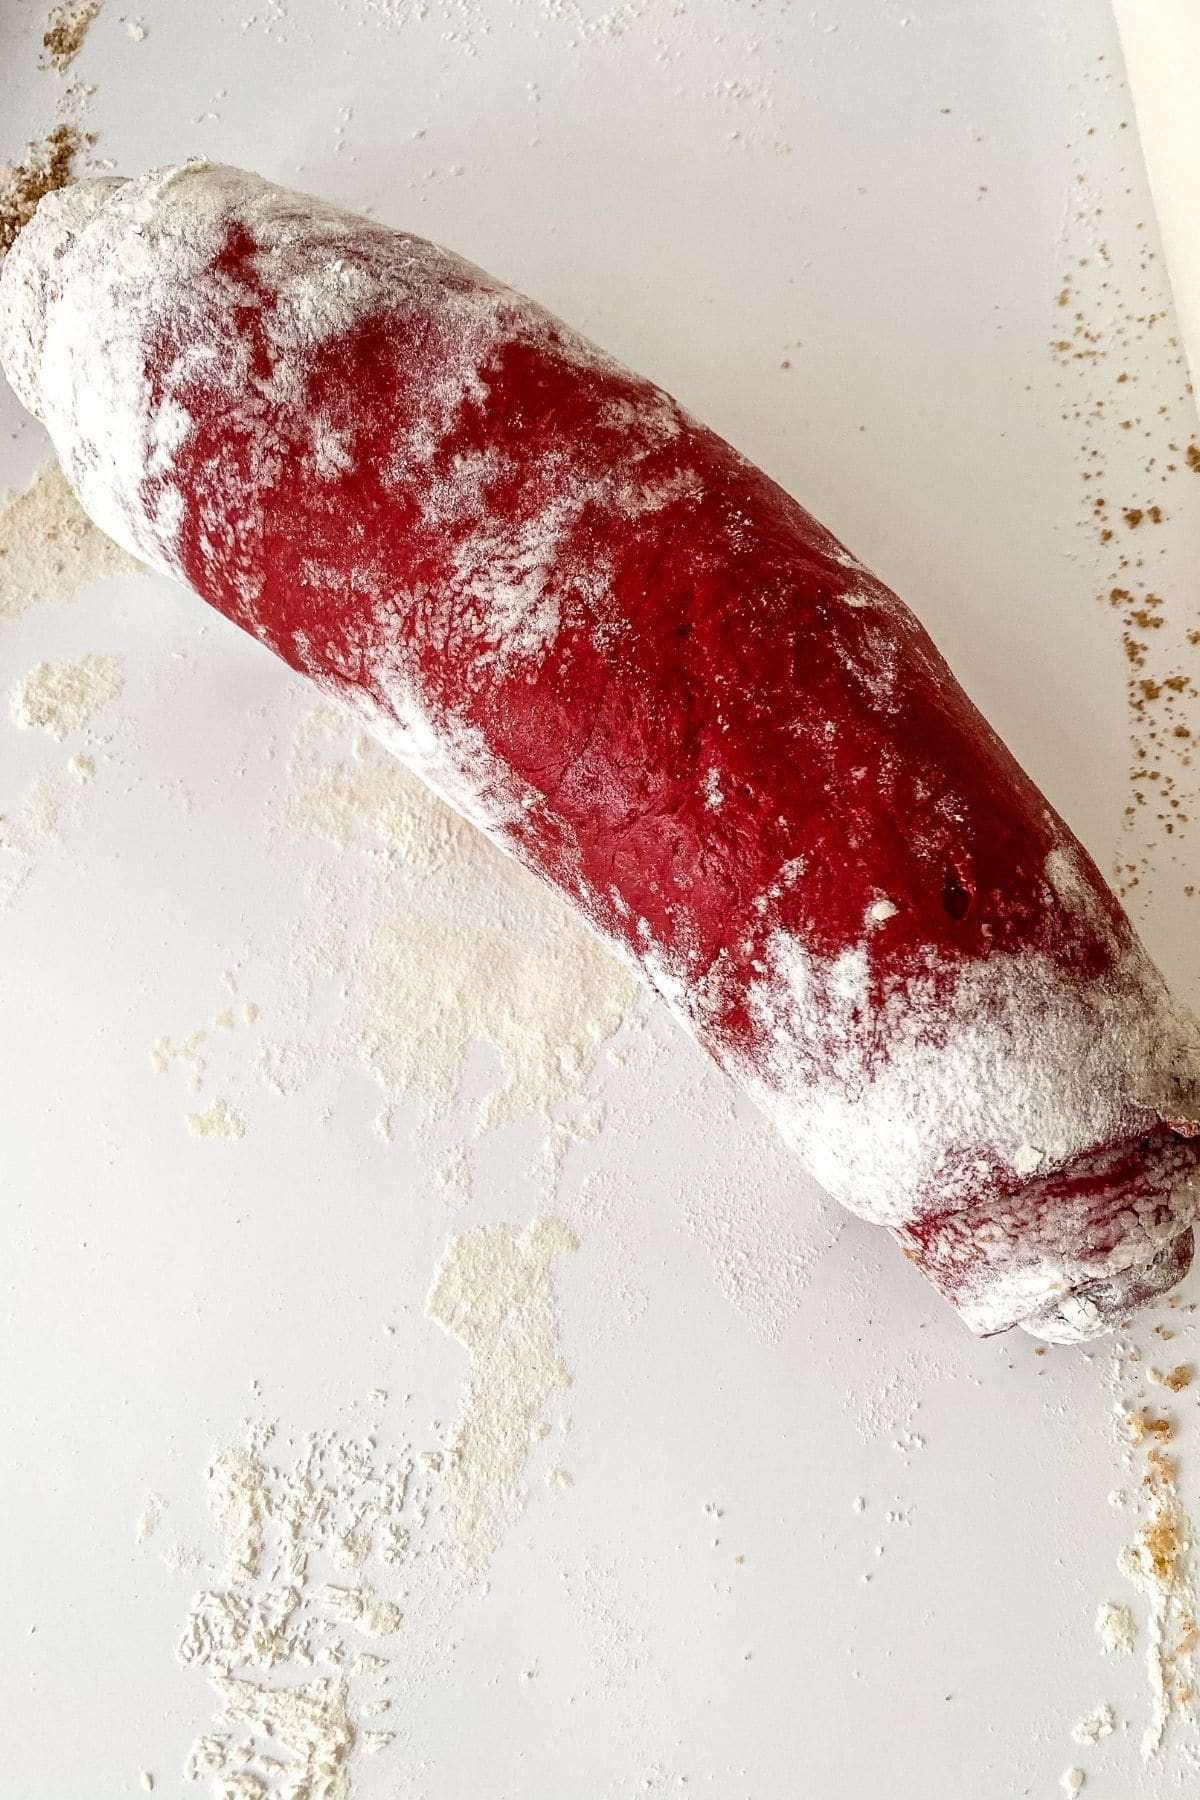 Roll of red velvet cinnamon roll dough